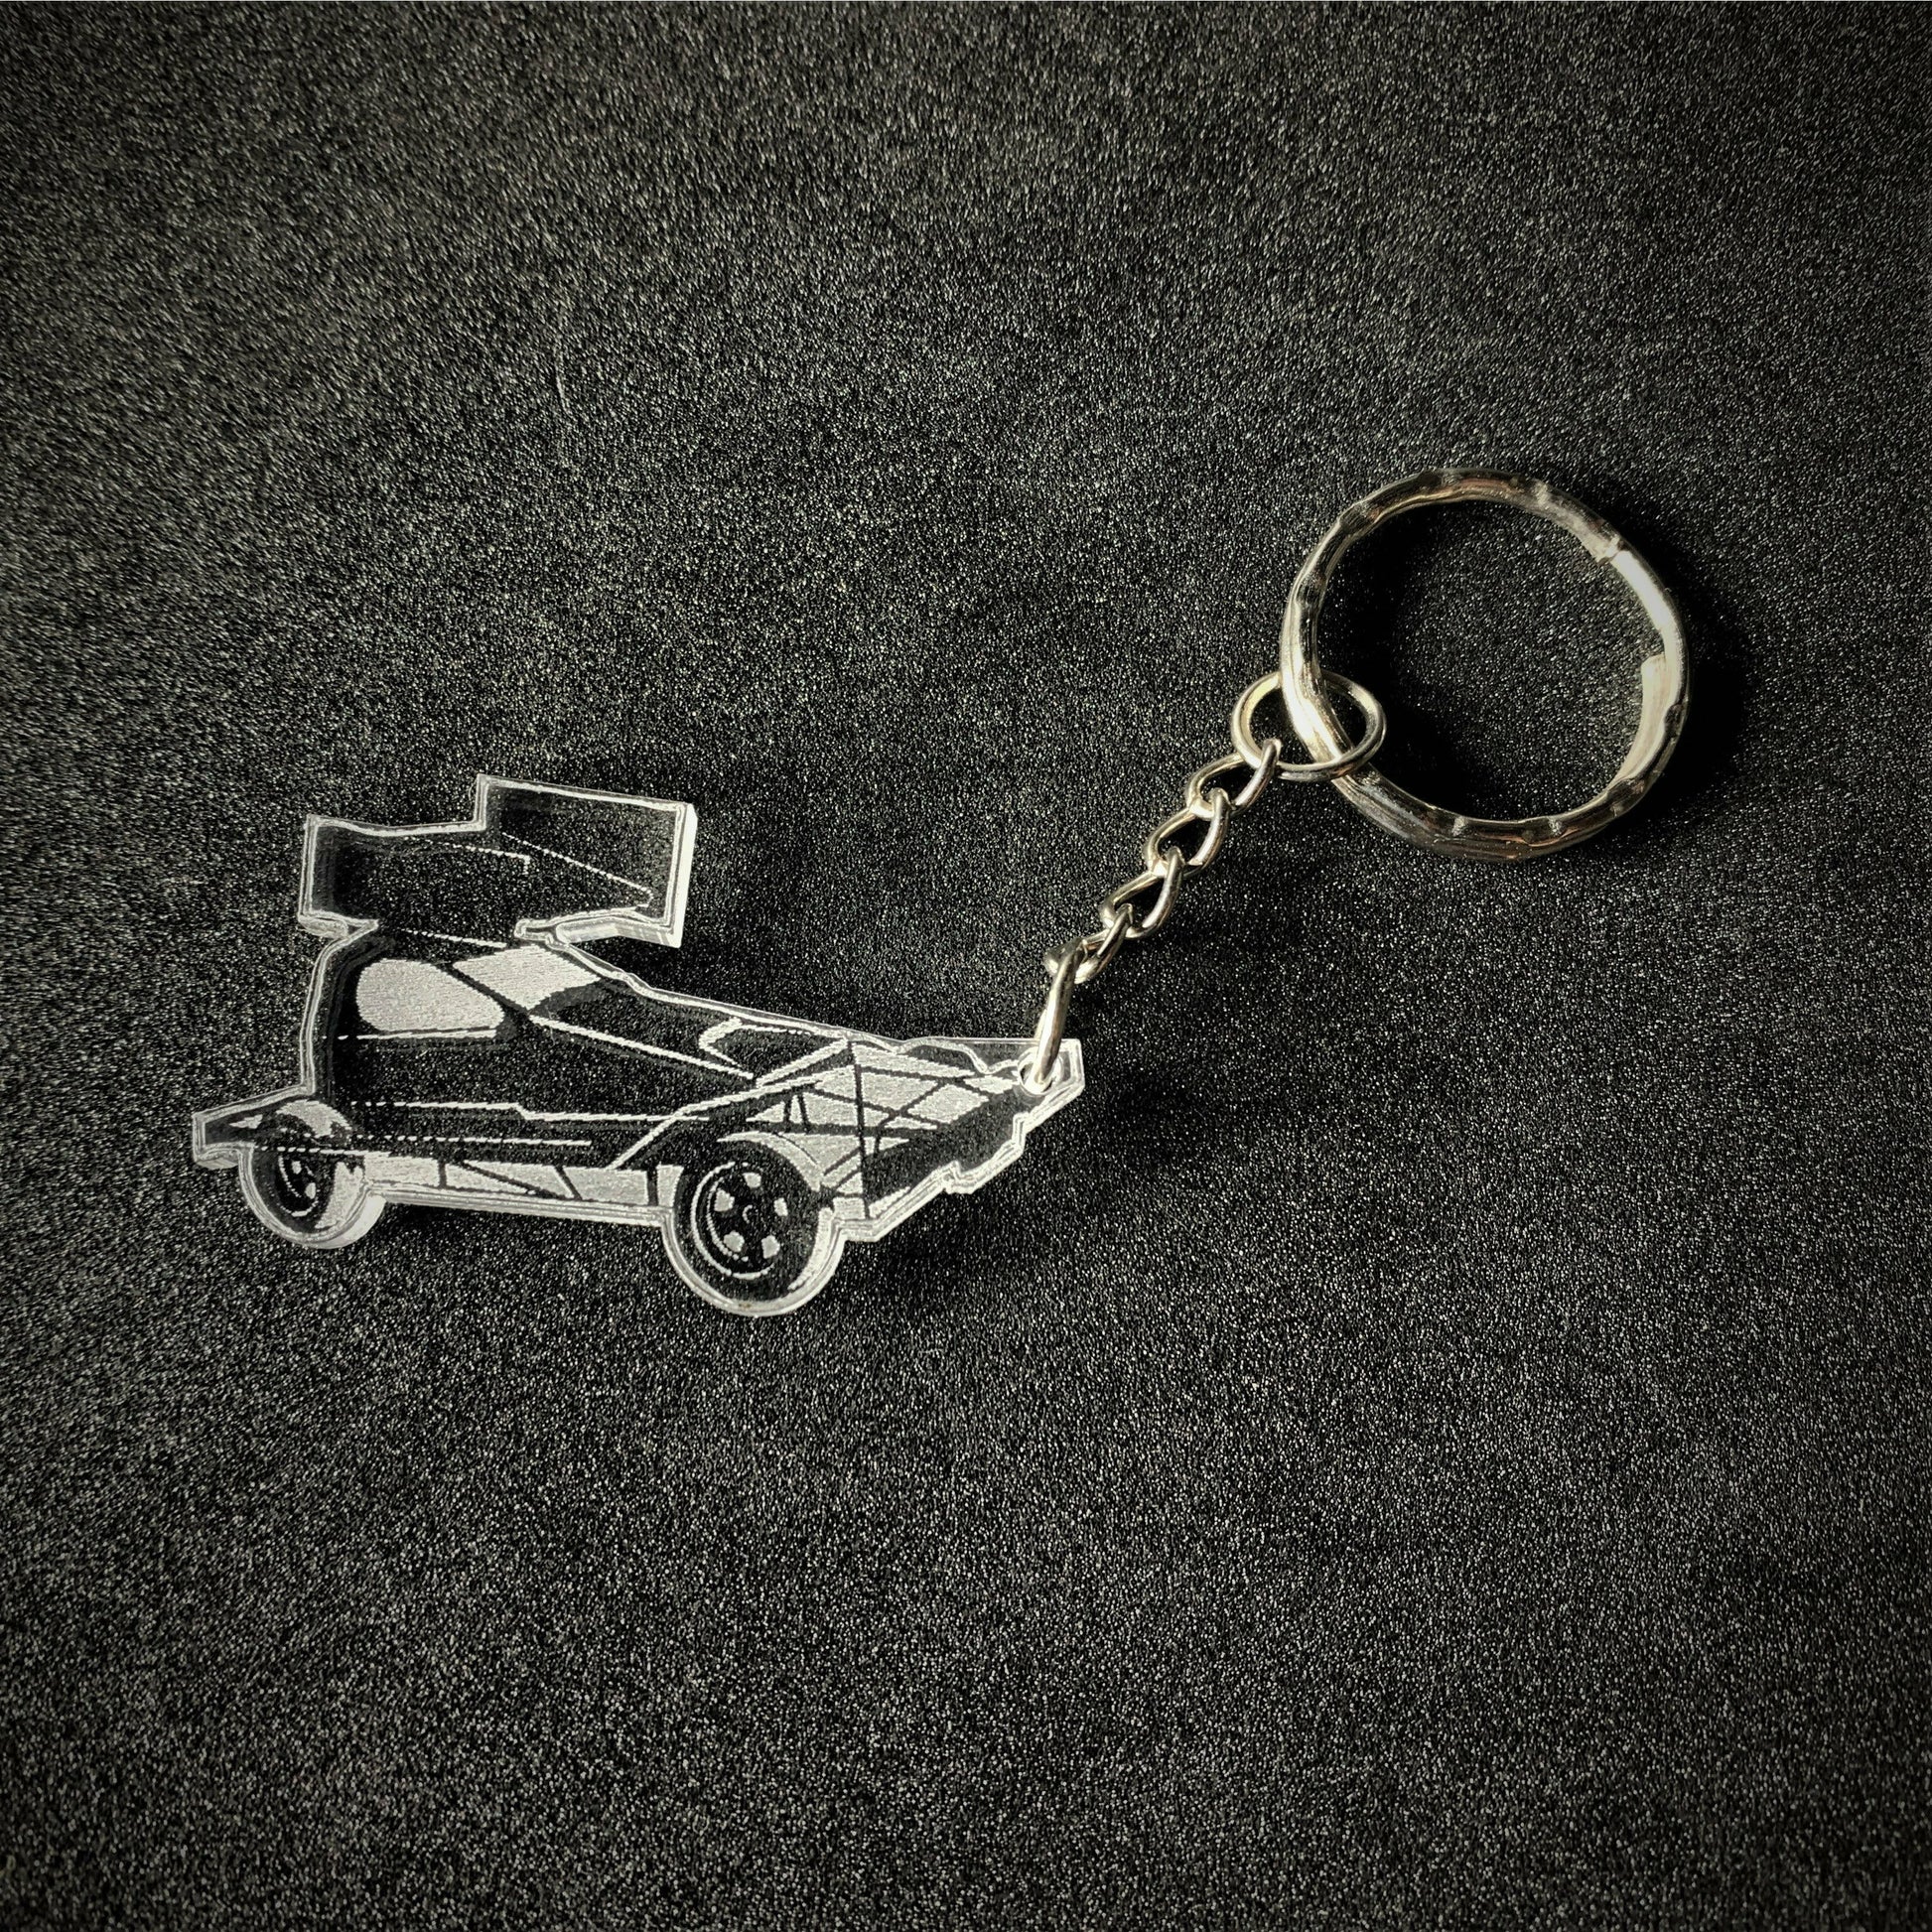 Brisca V8 Keyring - Key Ring - Stock Car & Banger Toy Tracks